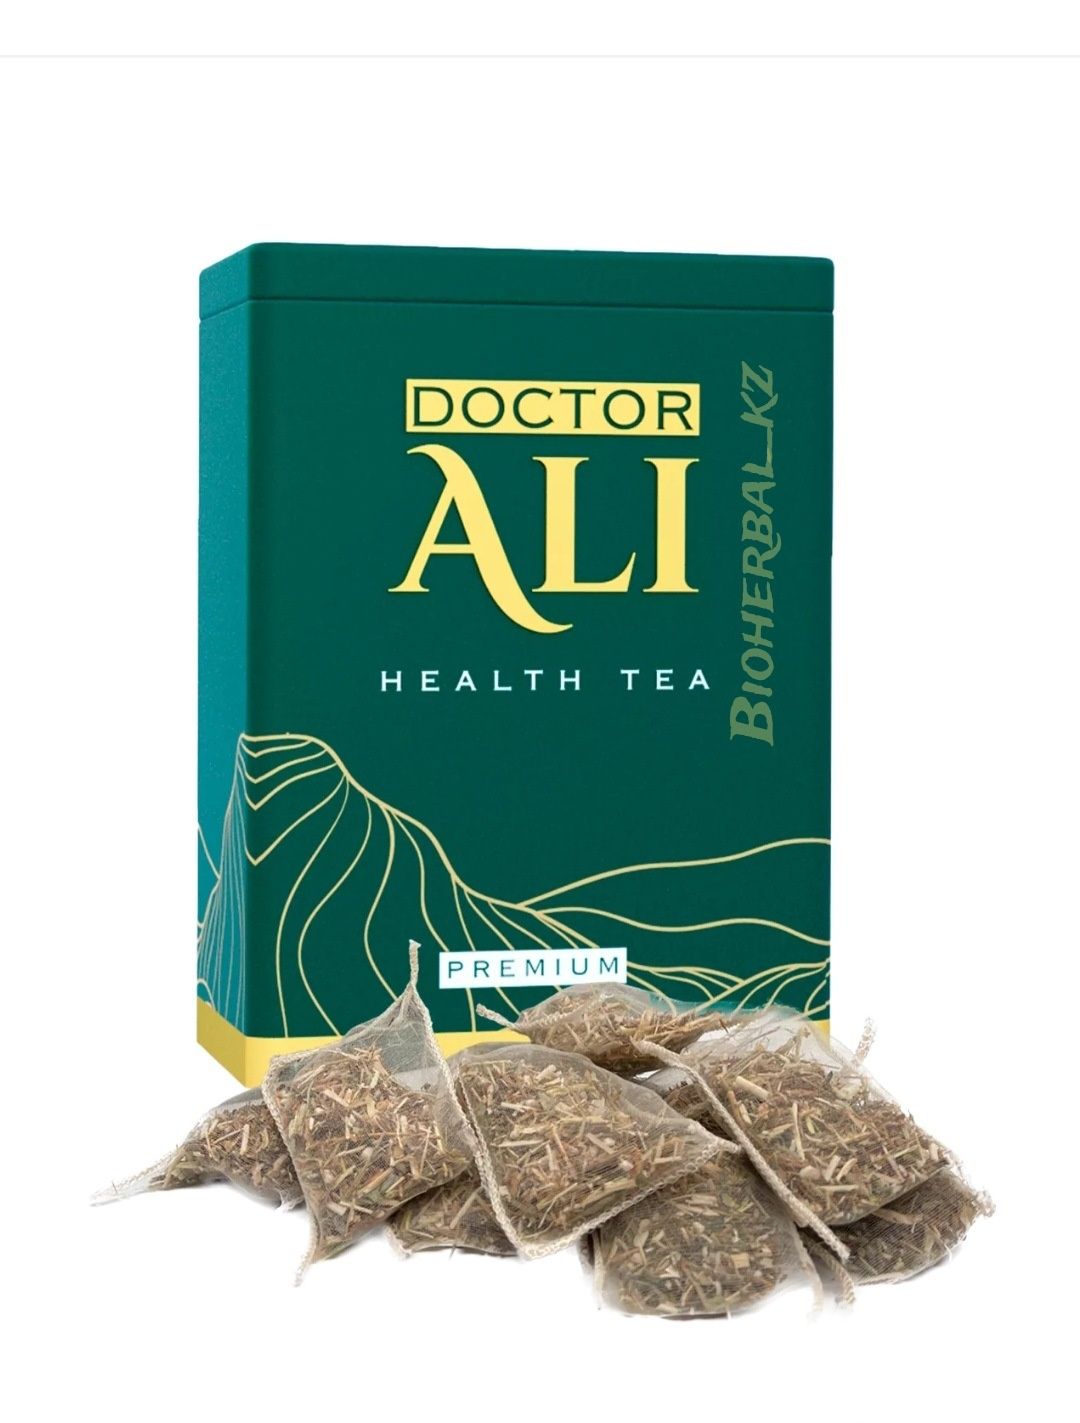 Doctor Ali/оздоровительный чай/Премиум Класса/Шёлковые мешочки